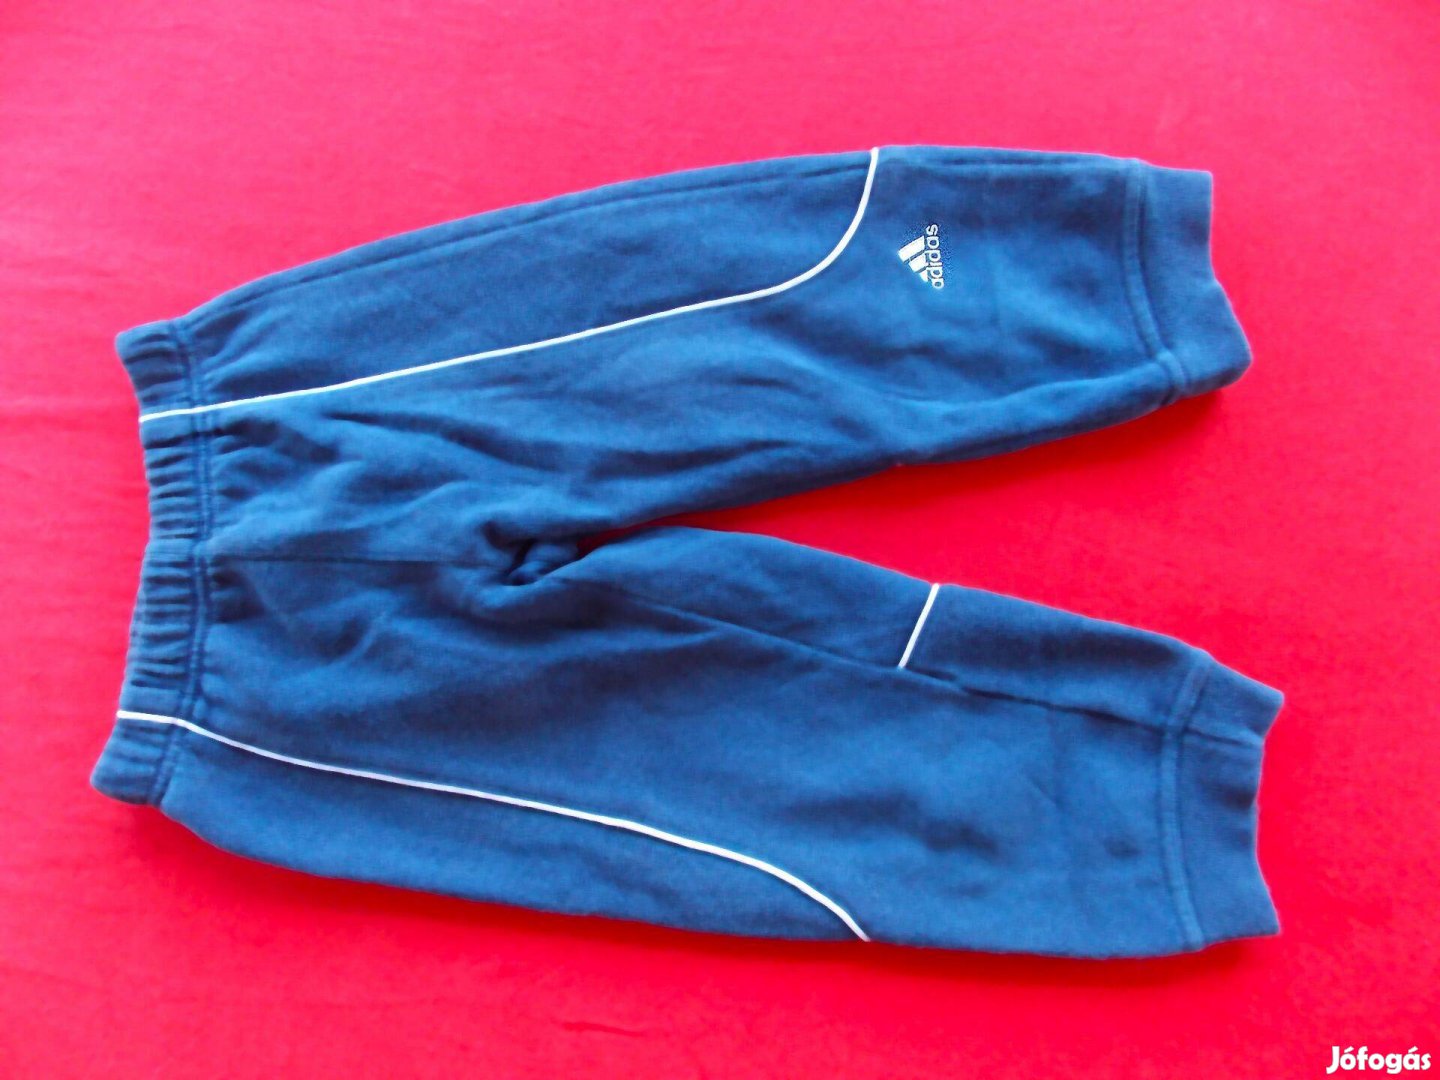 Adidas gumis derekú melegítőnadrág 98-as, 2-3 éves fiúra